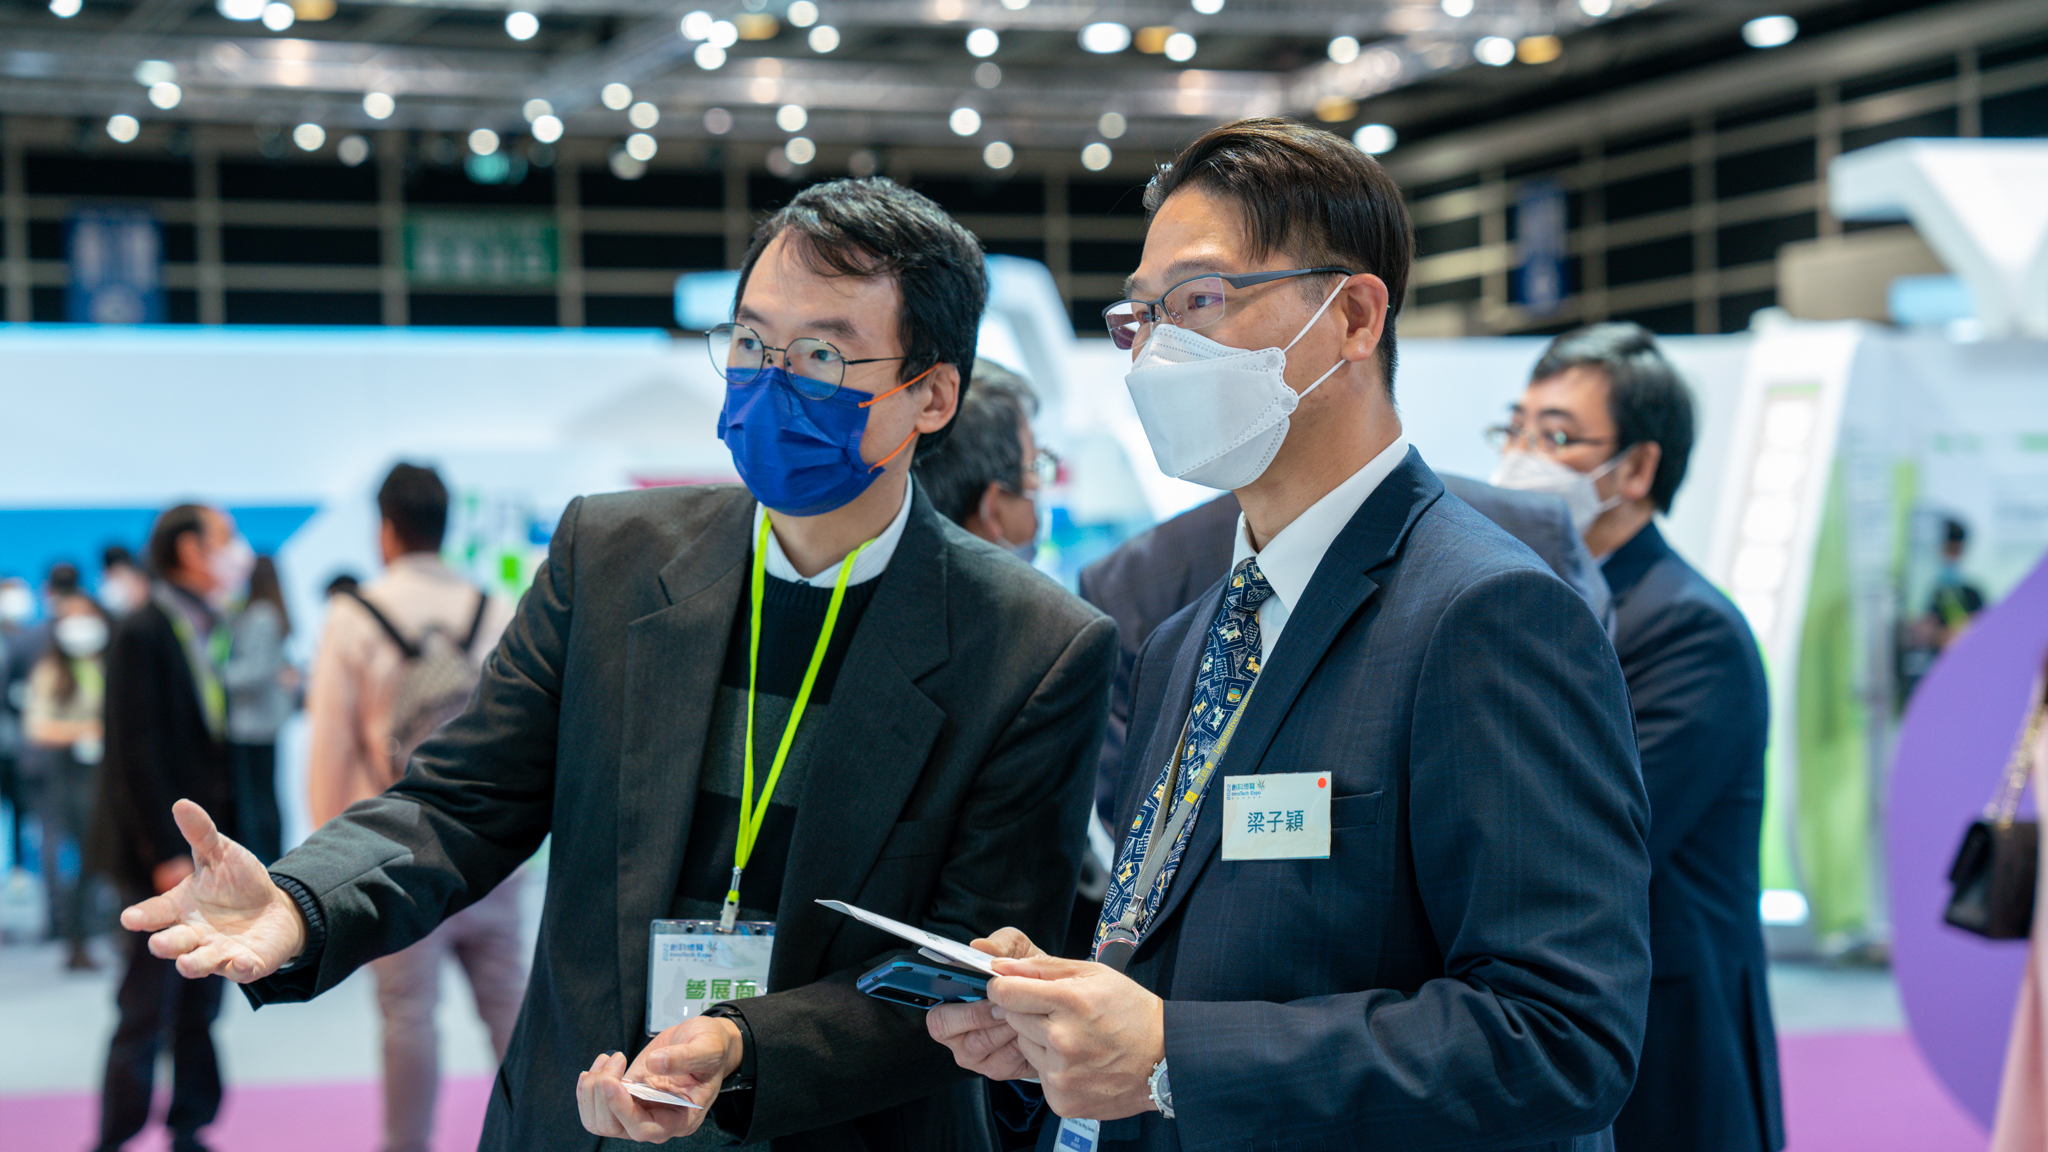 PRAISE-HK team at InnoTech Expo 2022